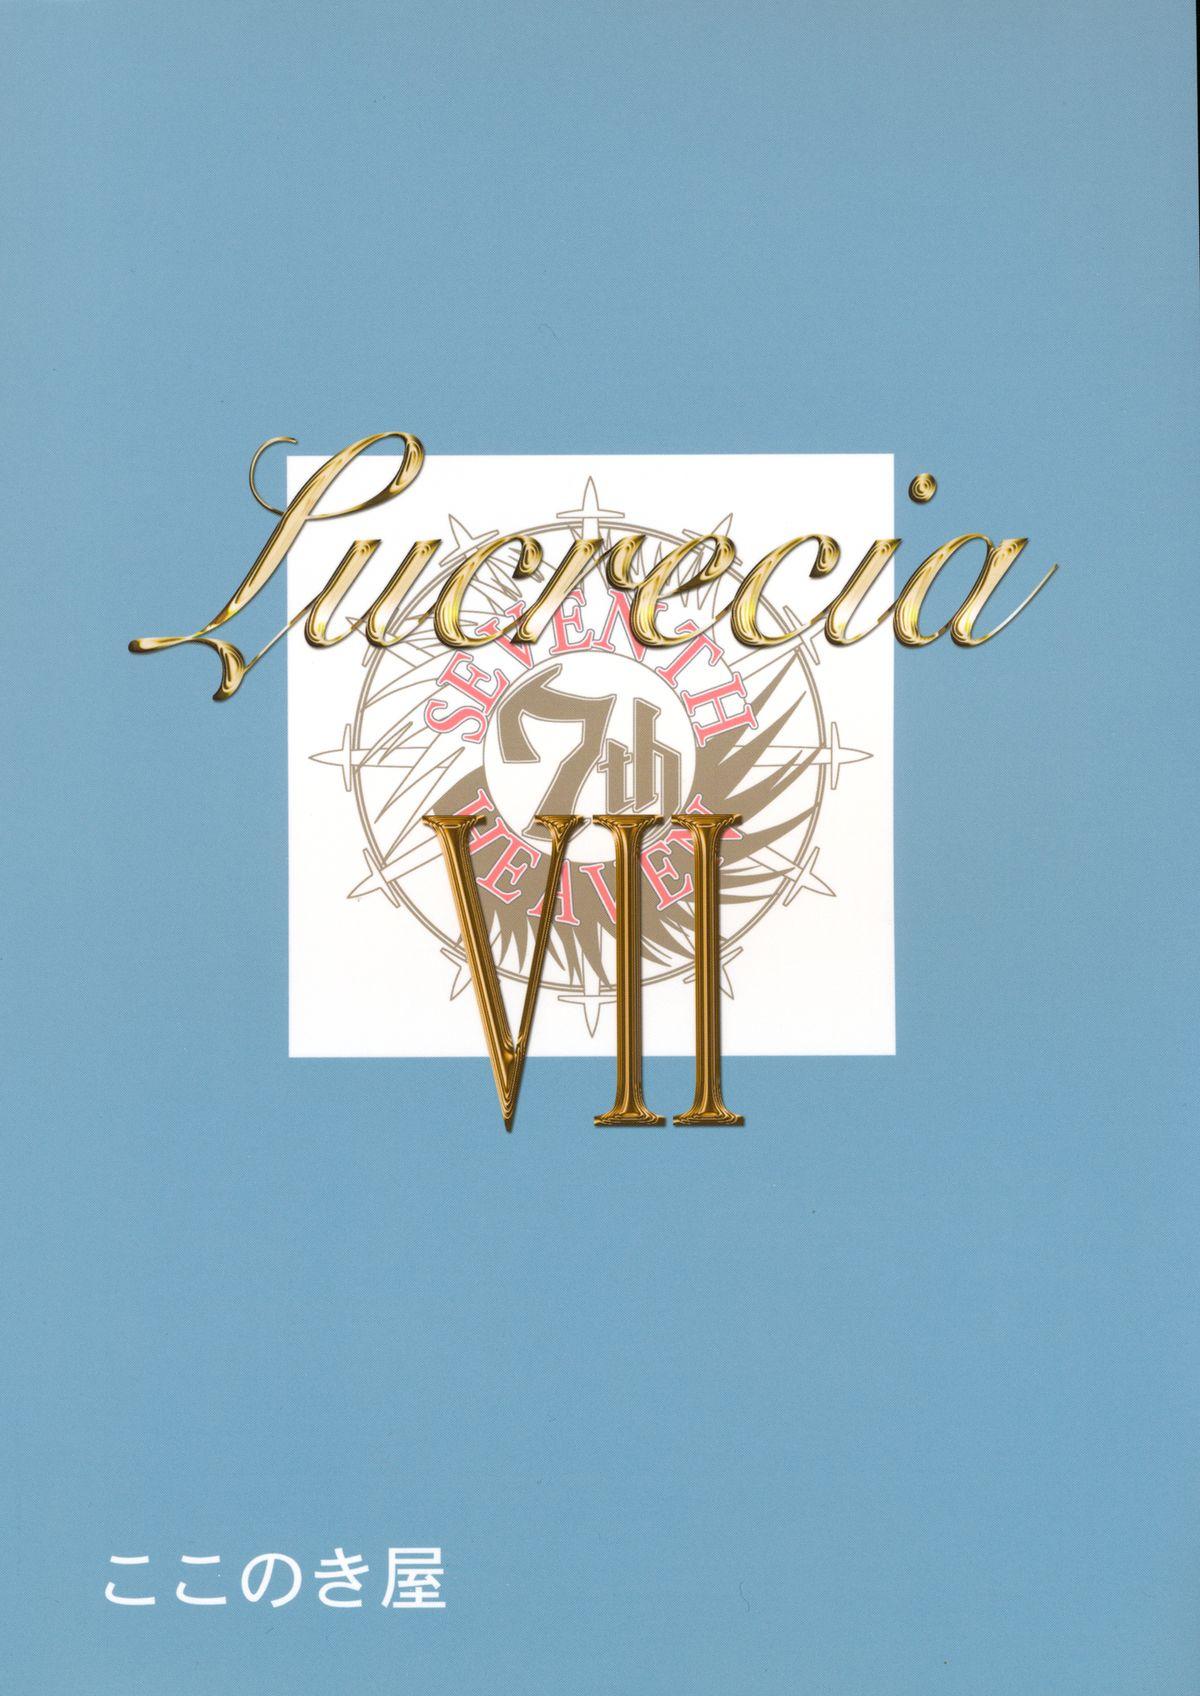 Lucrecia VII 1